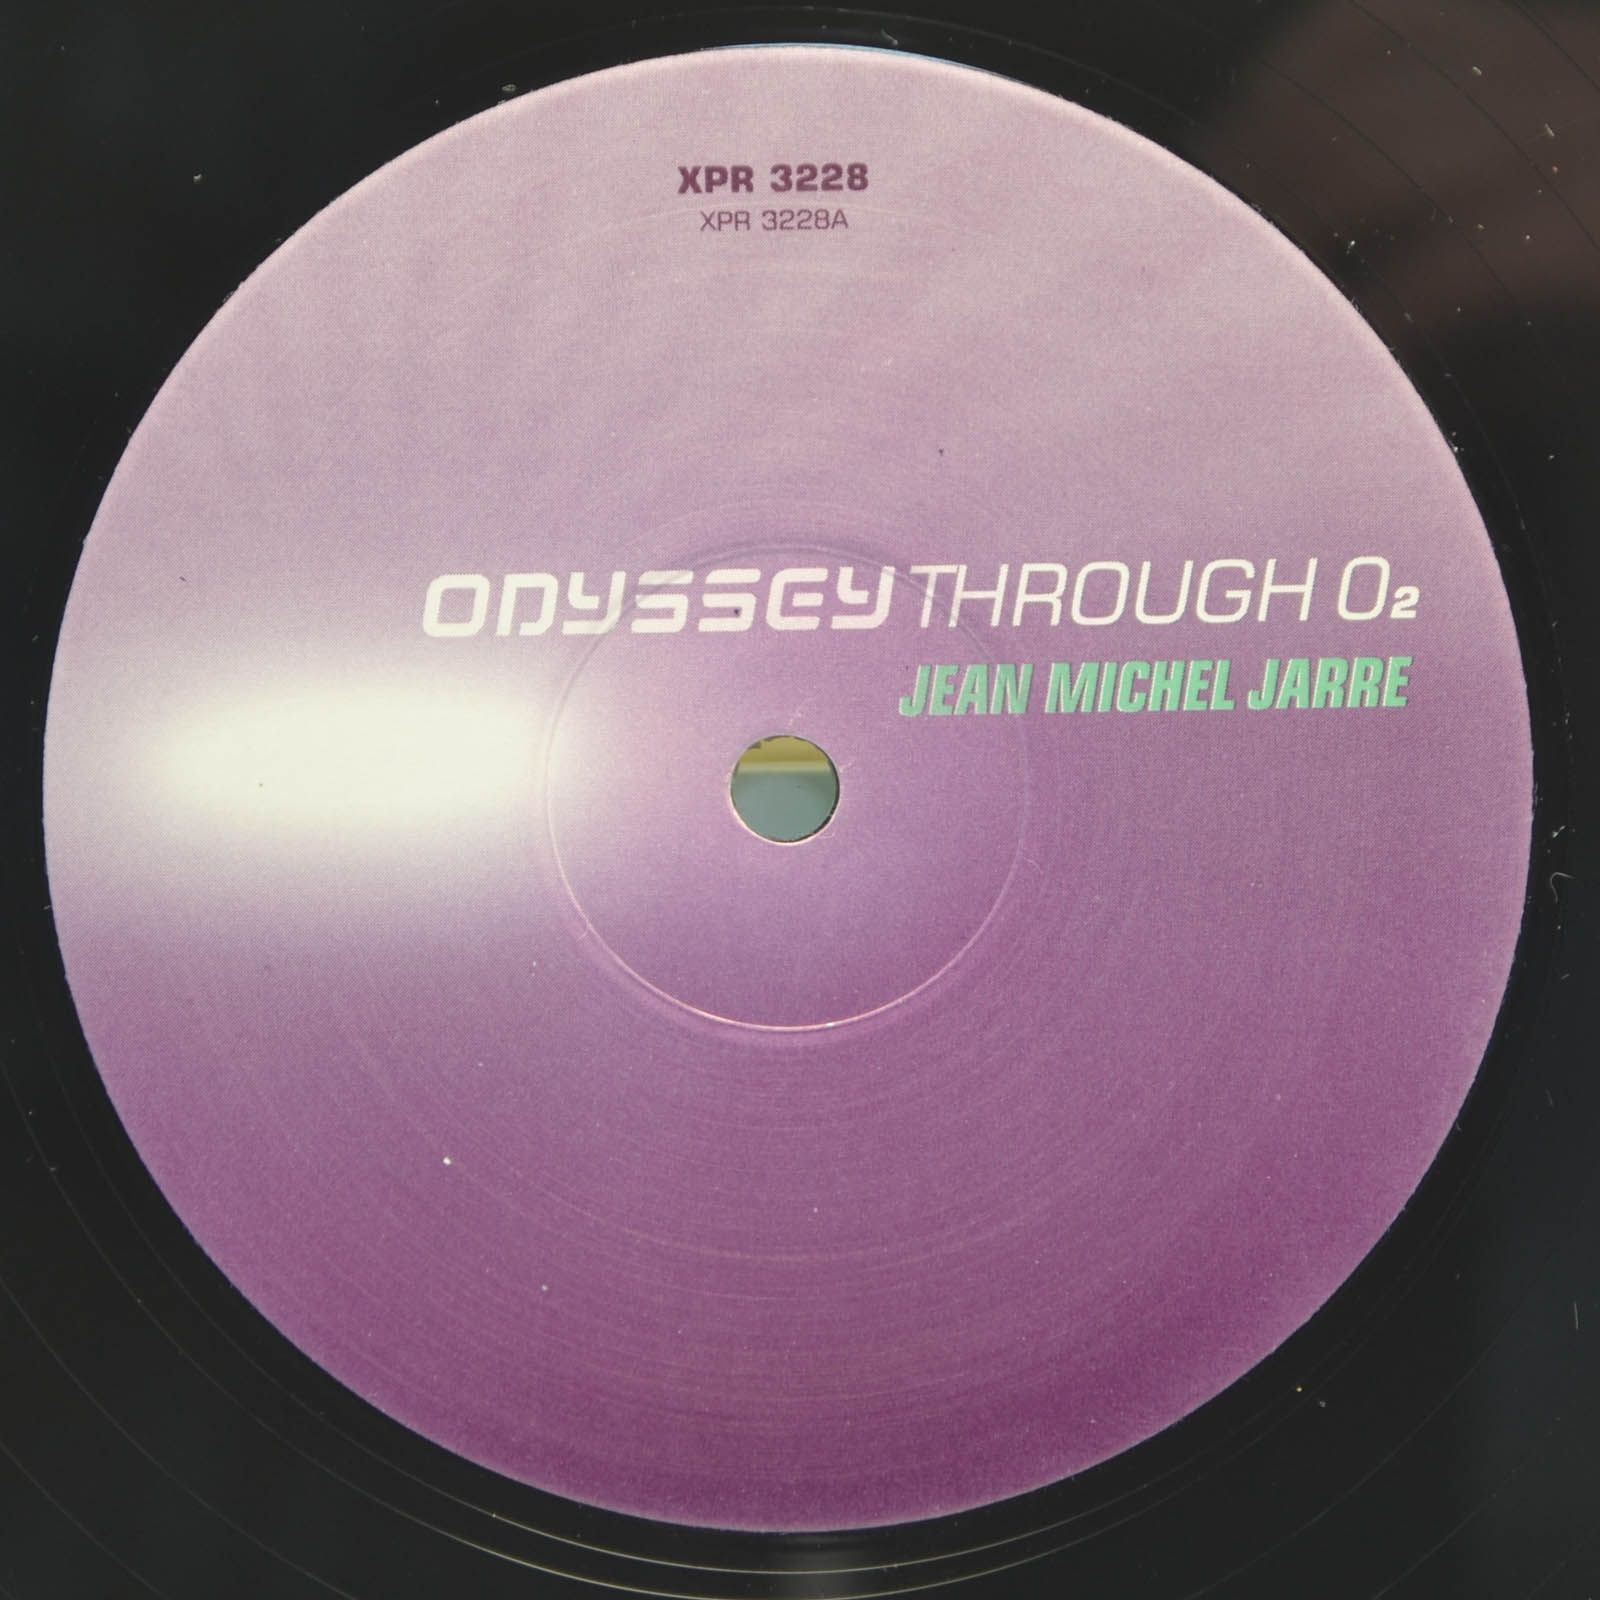 Jean-Michel Jarre — Odyssey Through O₂, 1998